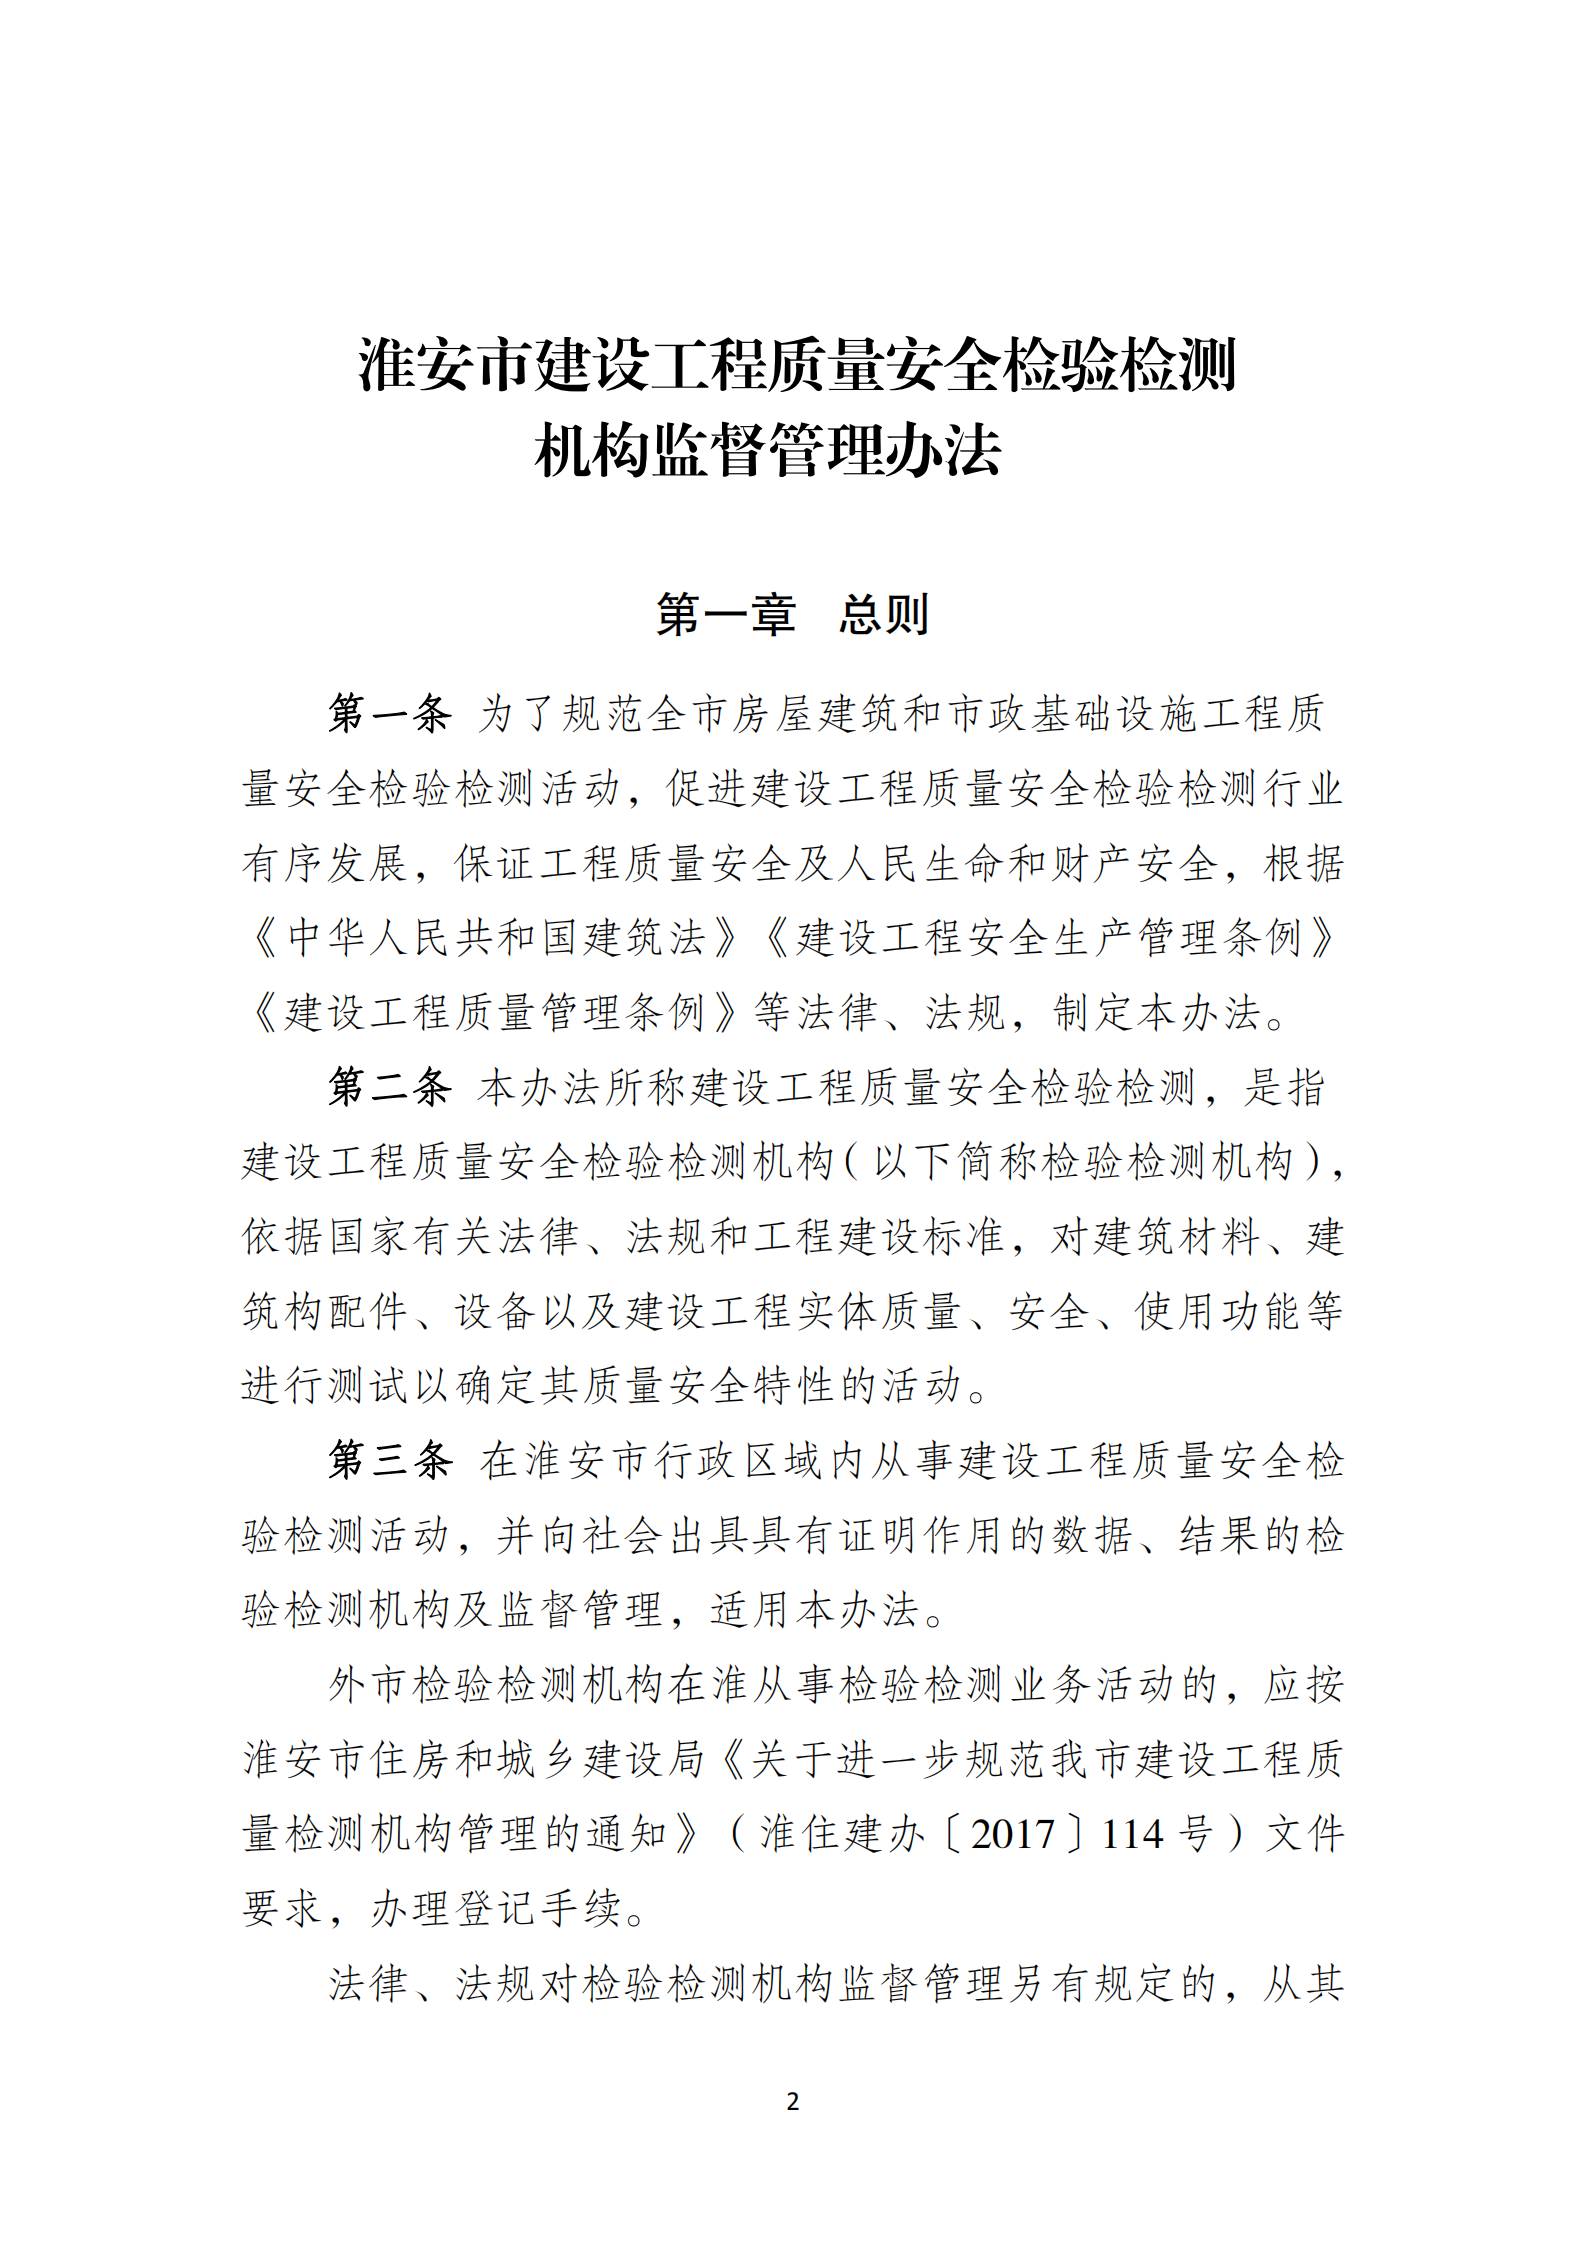 淮安市建設工程檢測機構監督管理辦法[2020]120號文_01.png